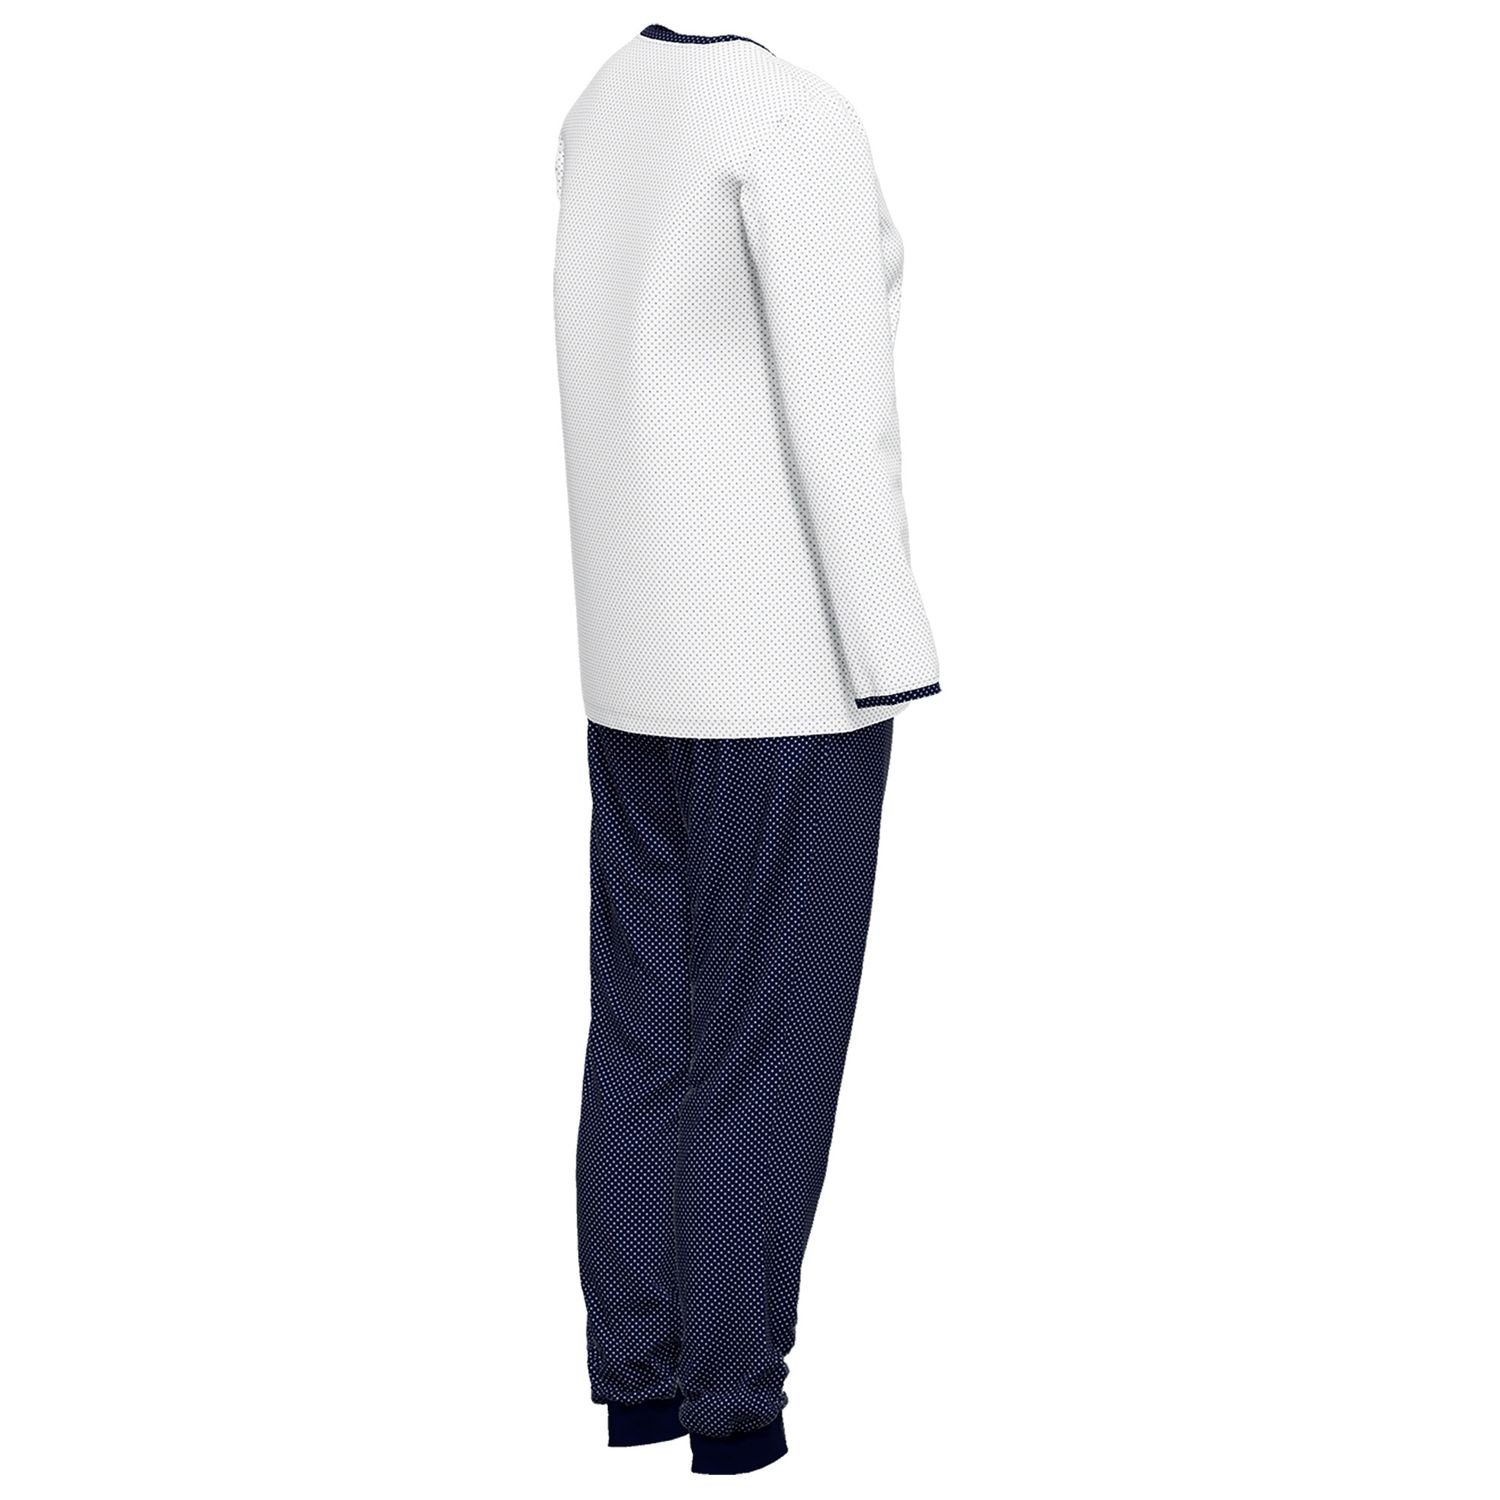 GÖTZBURG Schlafanzug mit Henley-Auschnitt, Knöpfe, langarm, weiß gepunktet Baumolle weich, bequem, reine / navy